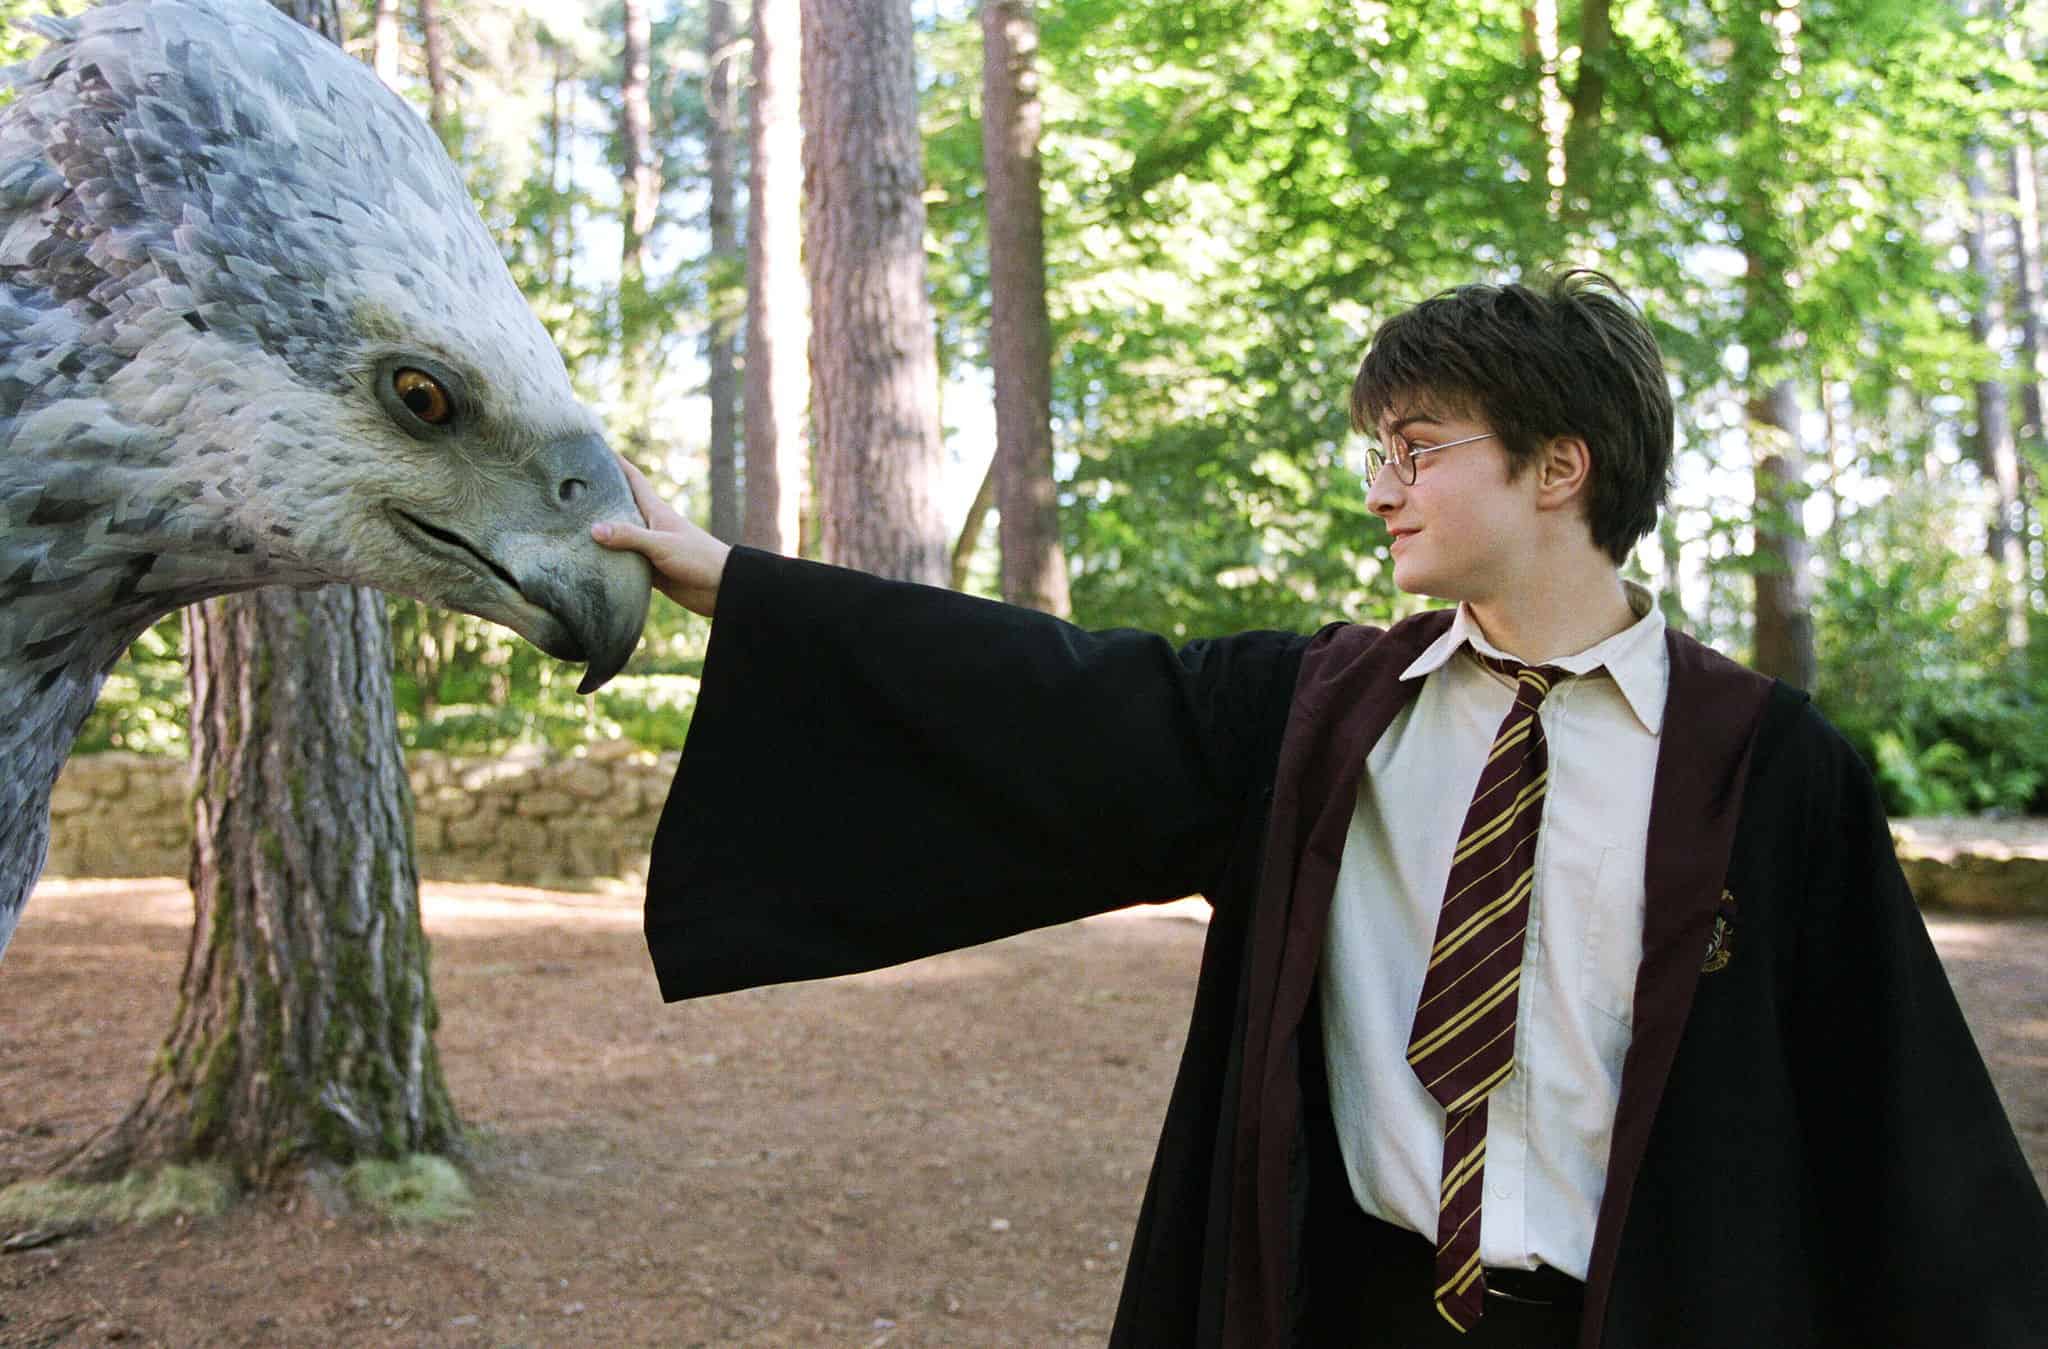 Harry pets Buckbeak in the woods